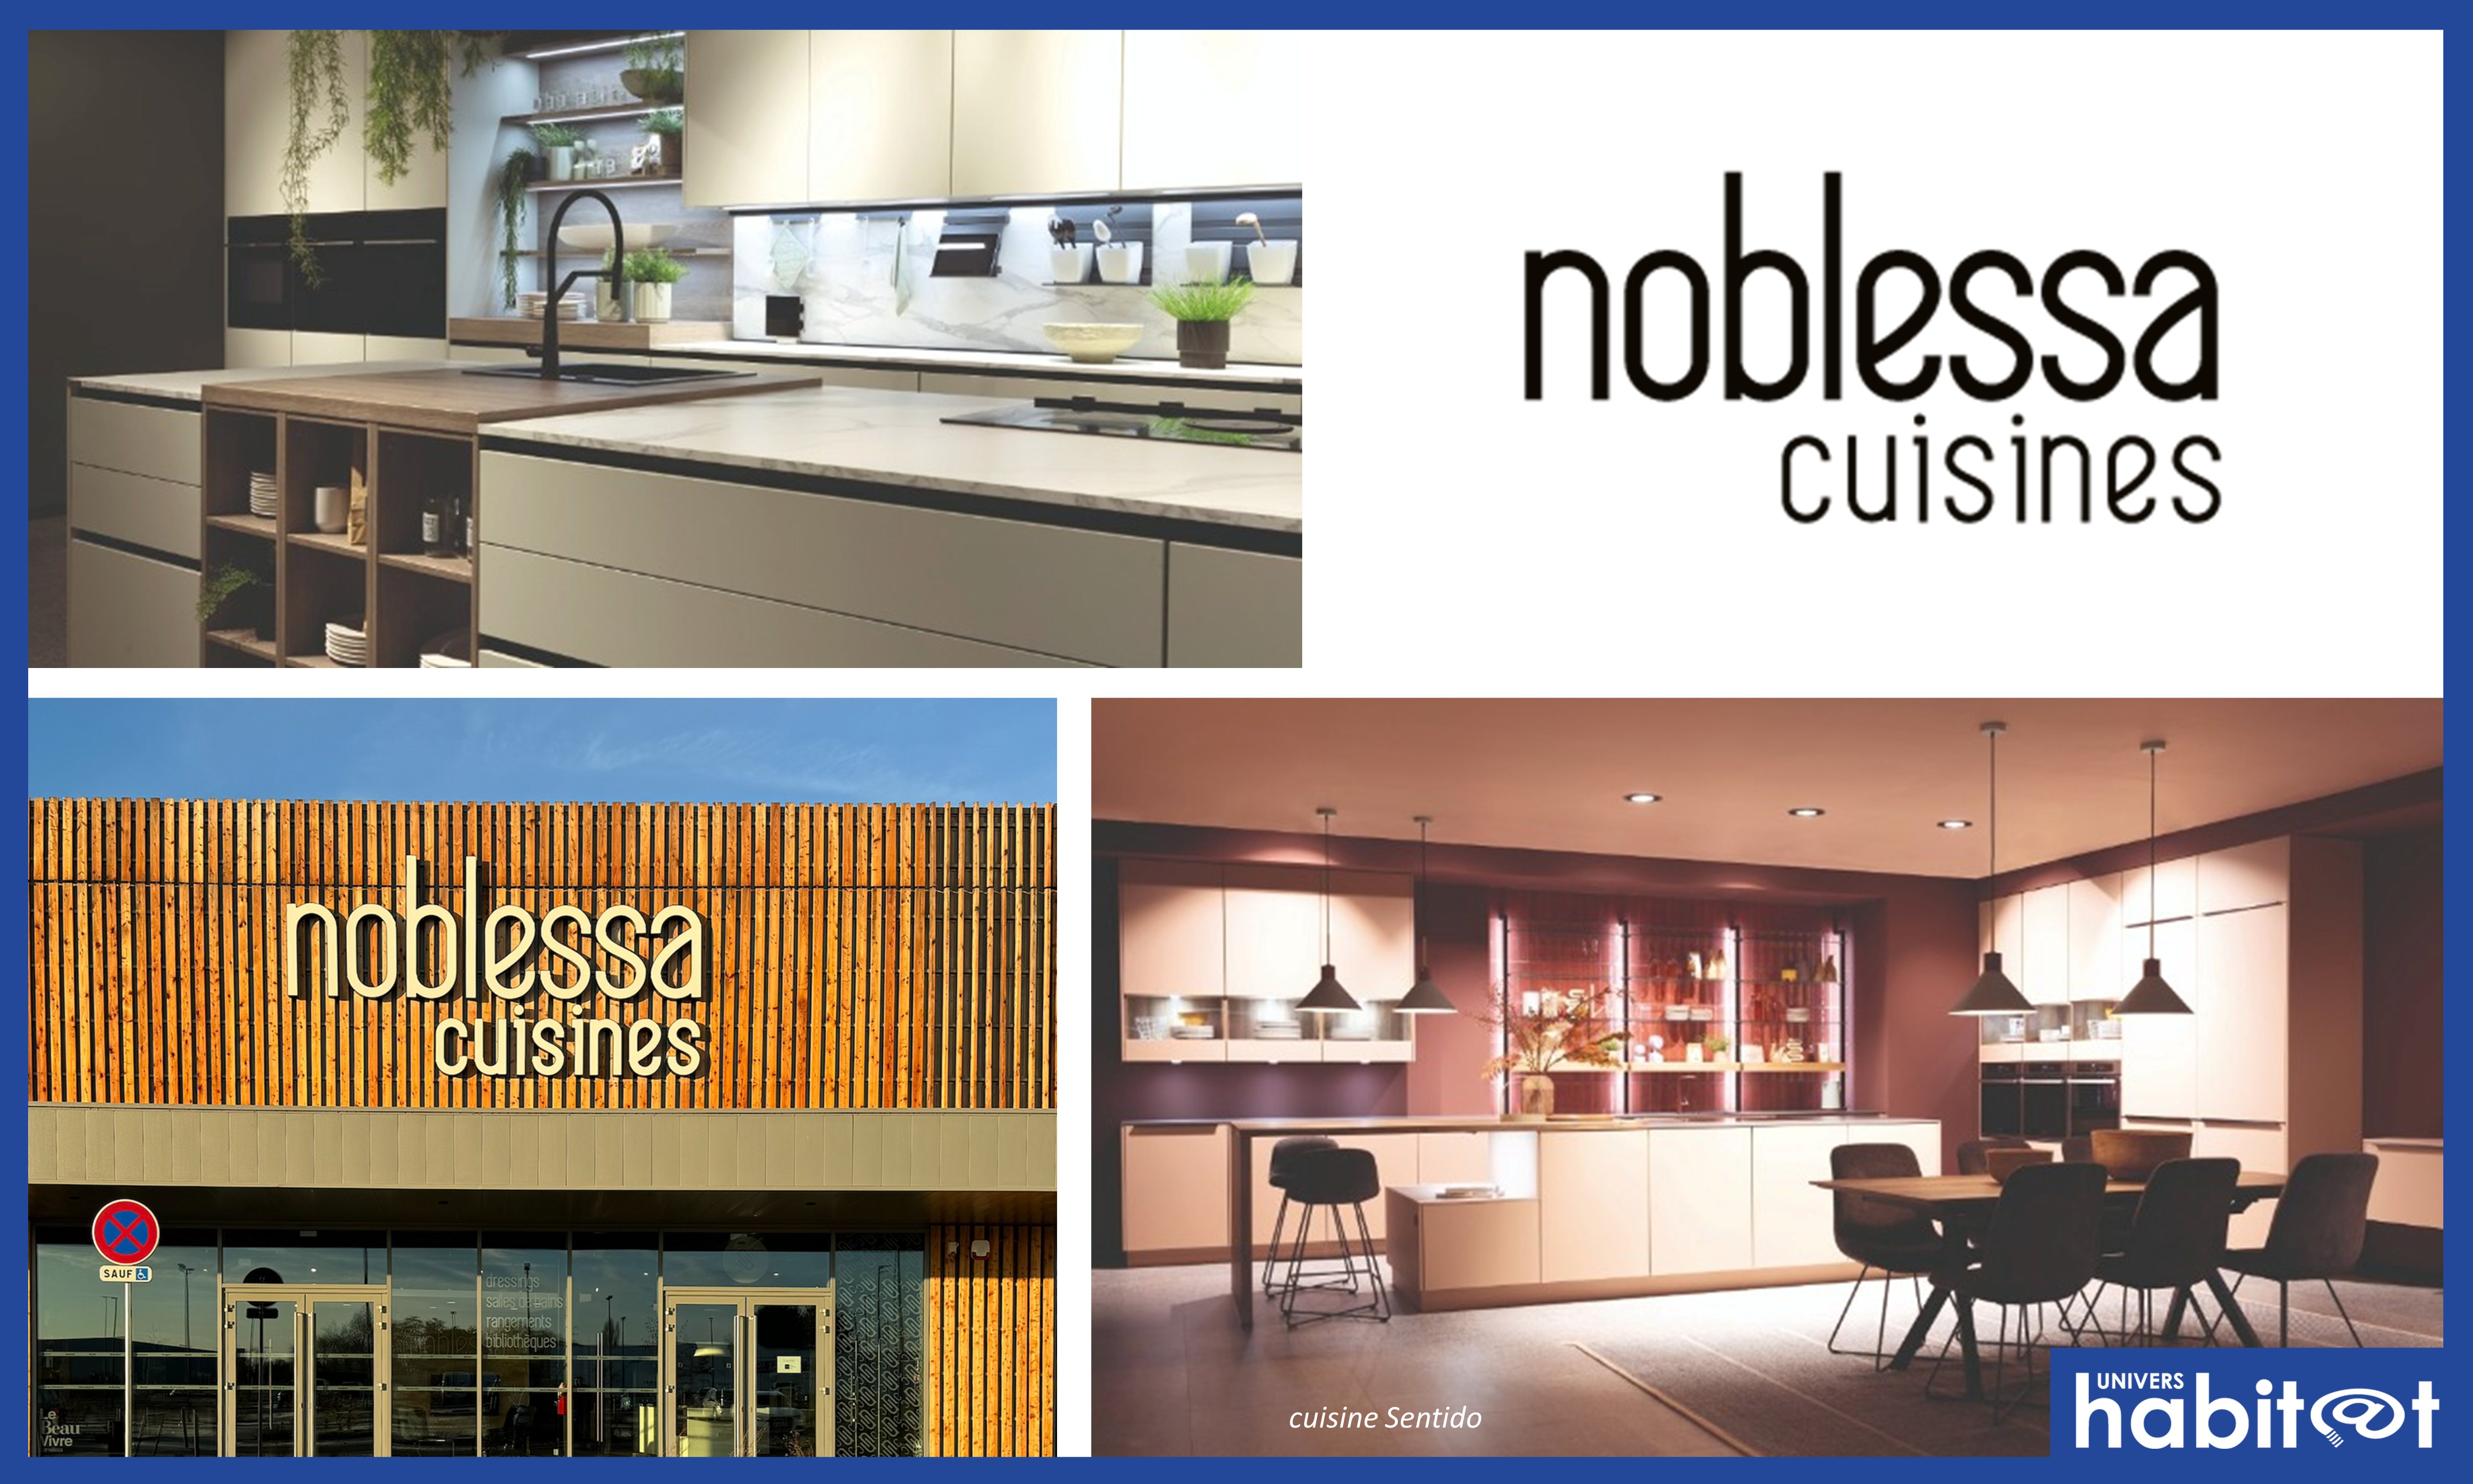 Noblessa Cuisines propose un nouveau modèle et s’installe à Strasbourg